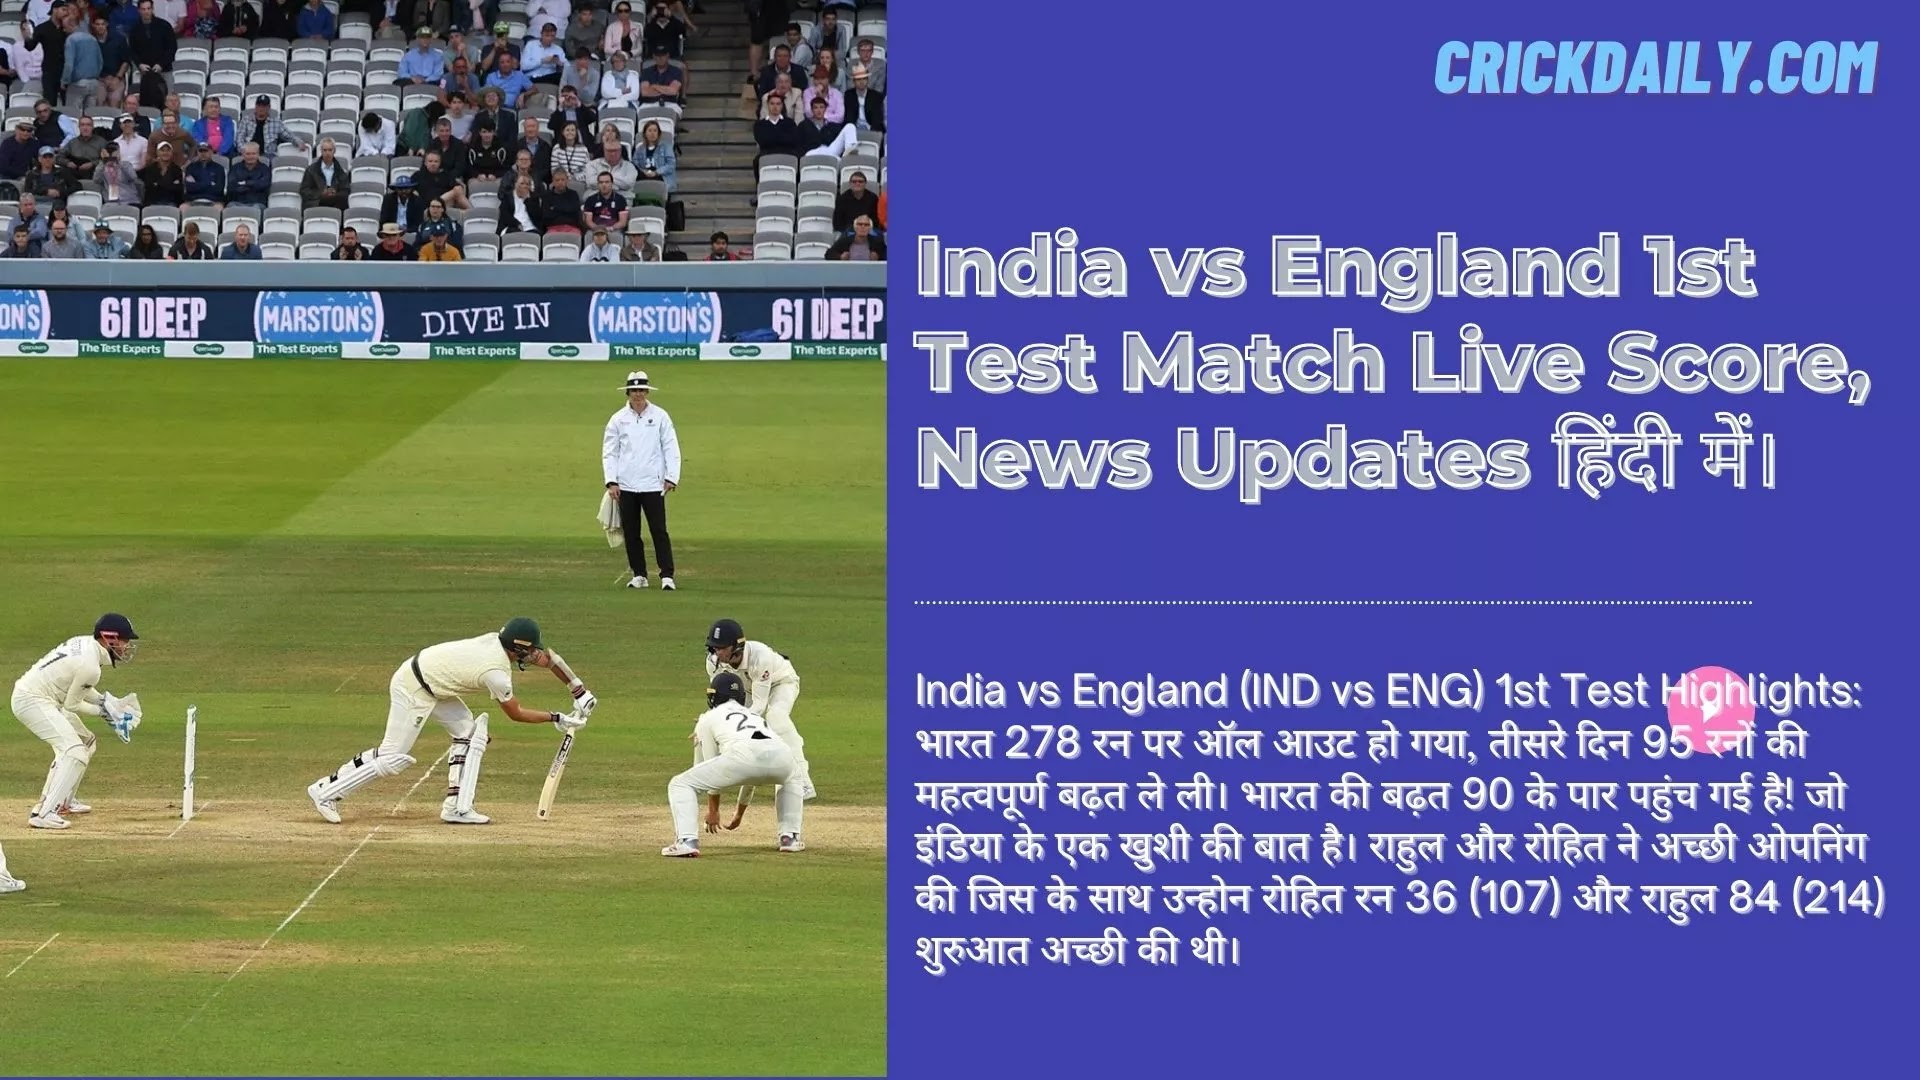 India vs England (IND vs ENG) 1st Test Highlights: भारत 278 रन पर ऑल आउट हो गया, तीसरे दिन 95 रनों की महत्वपूर्ण बढ़त ले ली। भारत की बढ़त 90 के पार पहुंच गई है! जो इंडिया के एक खुशी की बात है। राहुल और रोहित ने अच्छी ओपनिंग की जिस के साथ उन्होन रोहित रन 36 (107) और राहुल 84 (214)  शुरुआत अच्छी की थी।